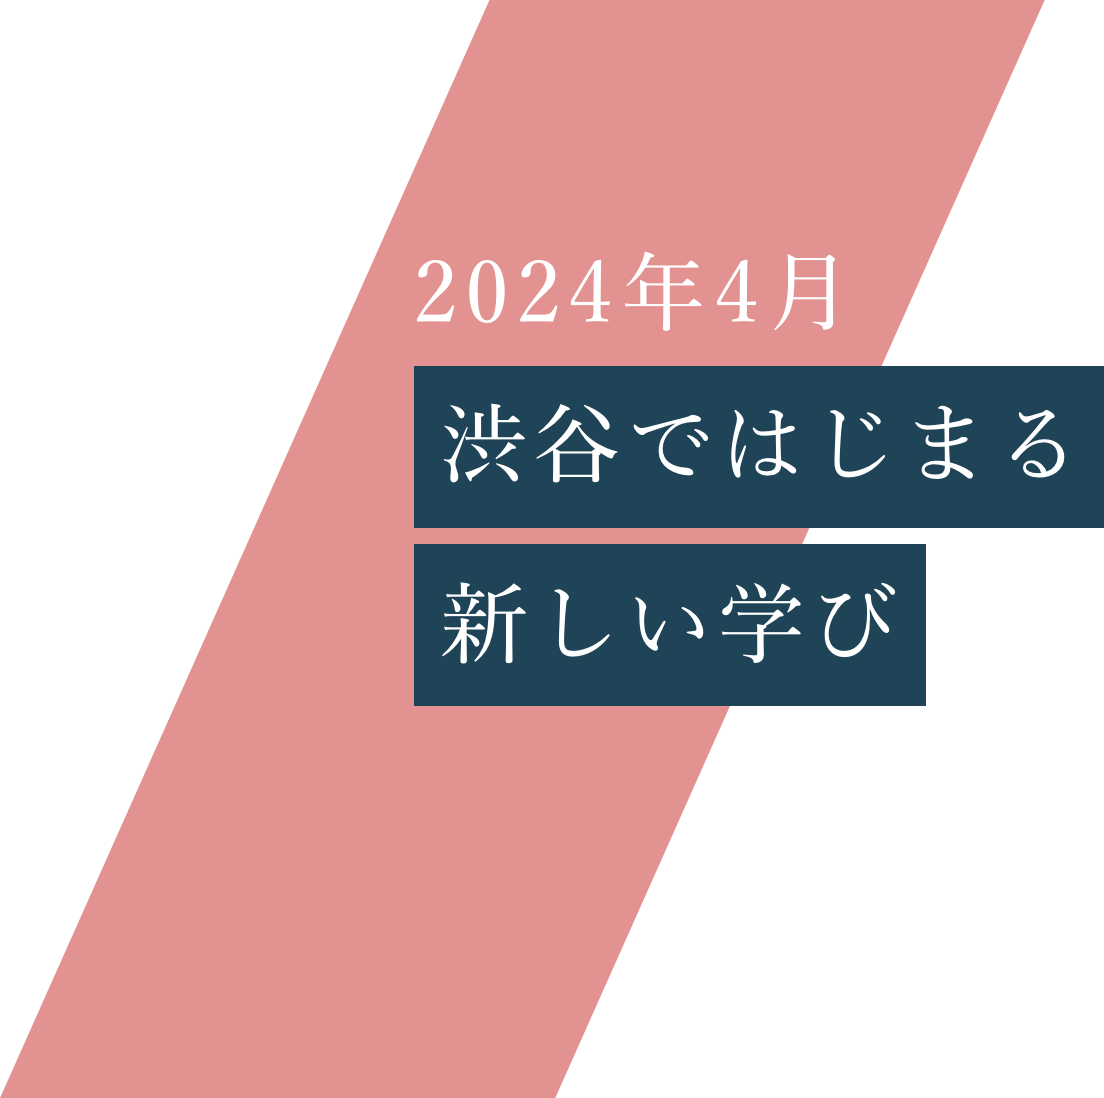 2024年4月 渋谷で始まる3つの学科。